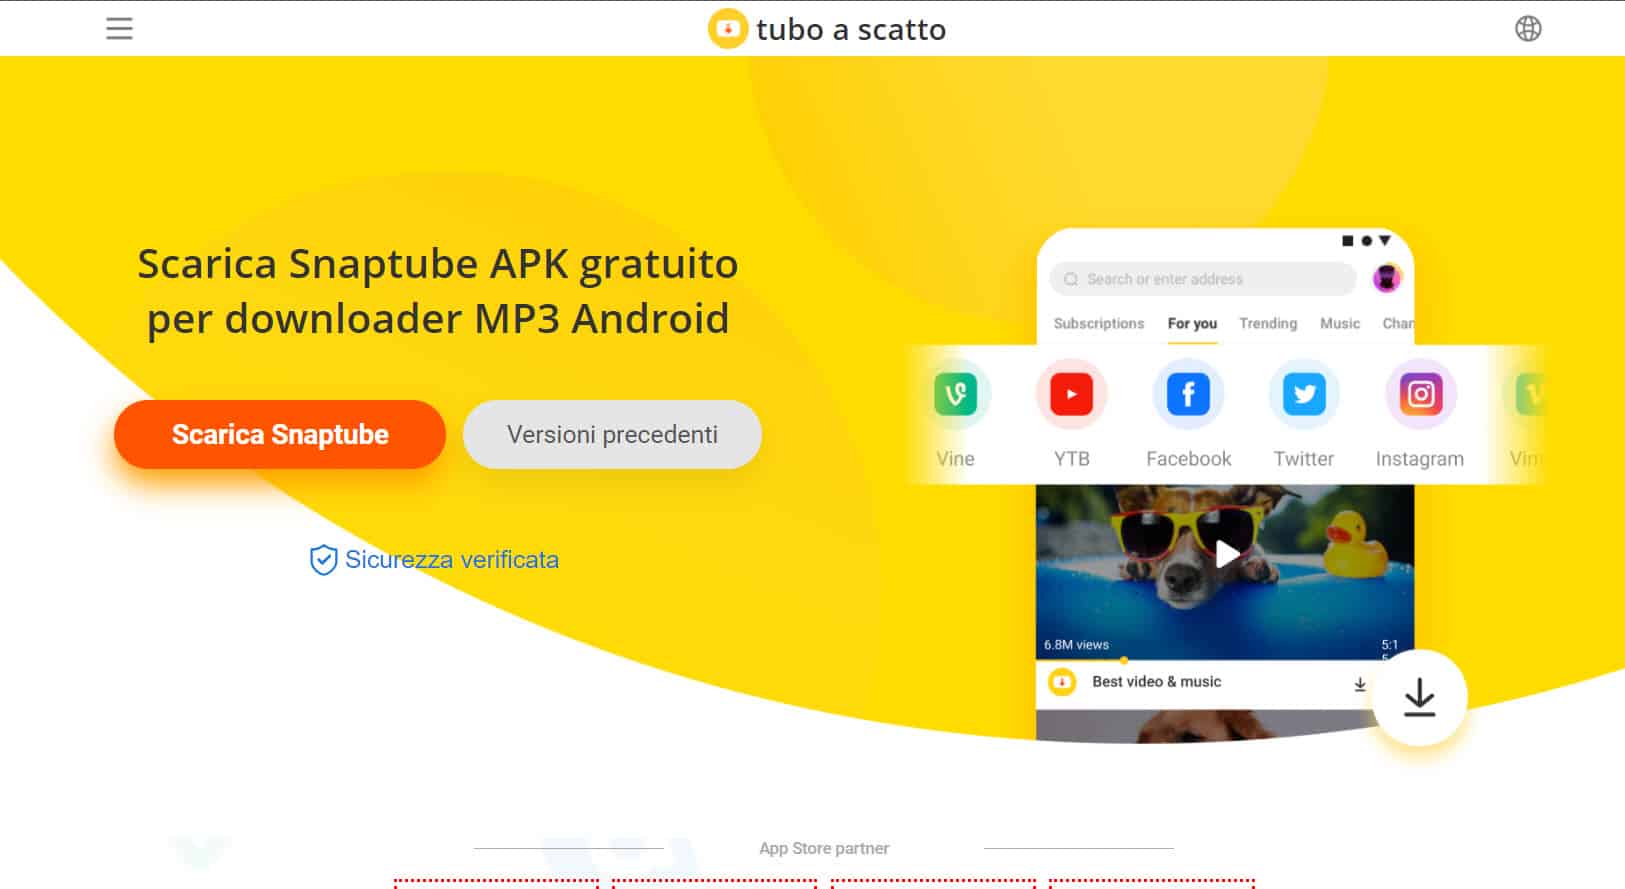 Scarica SnapTube ITA APK Gratis per Android, PC, iOS